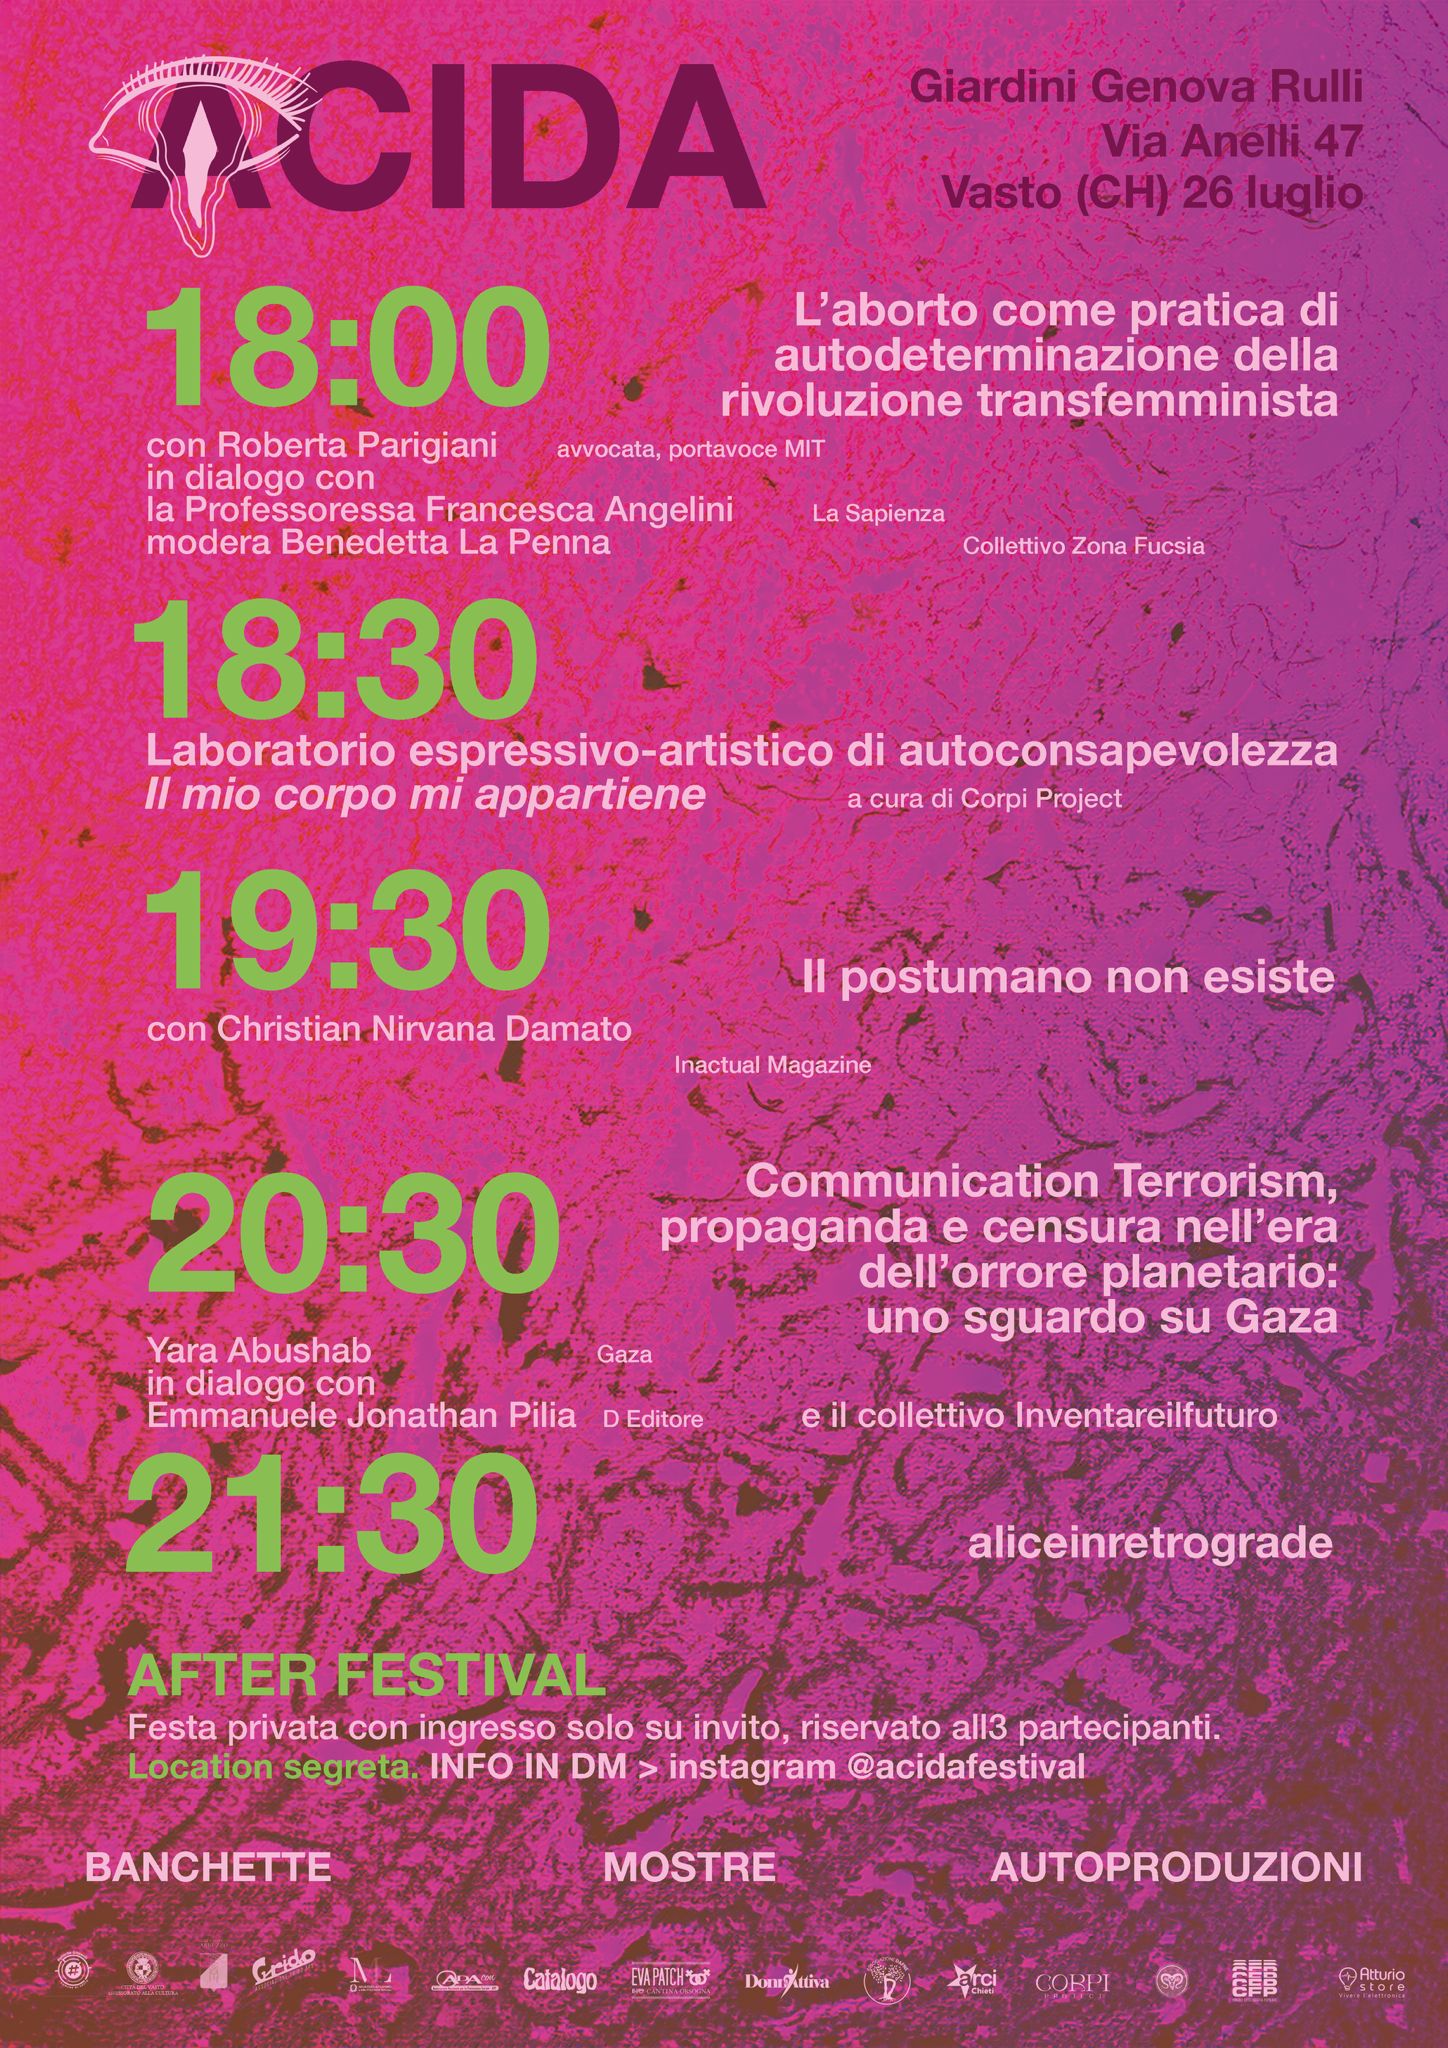    Acida Festival: la prima edizione ai Giardini Genova Rulli 